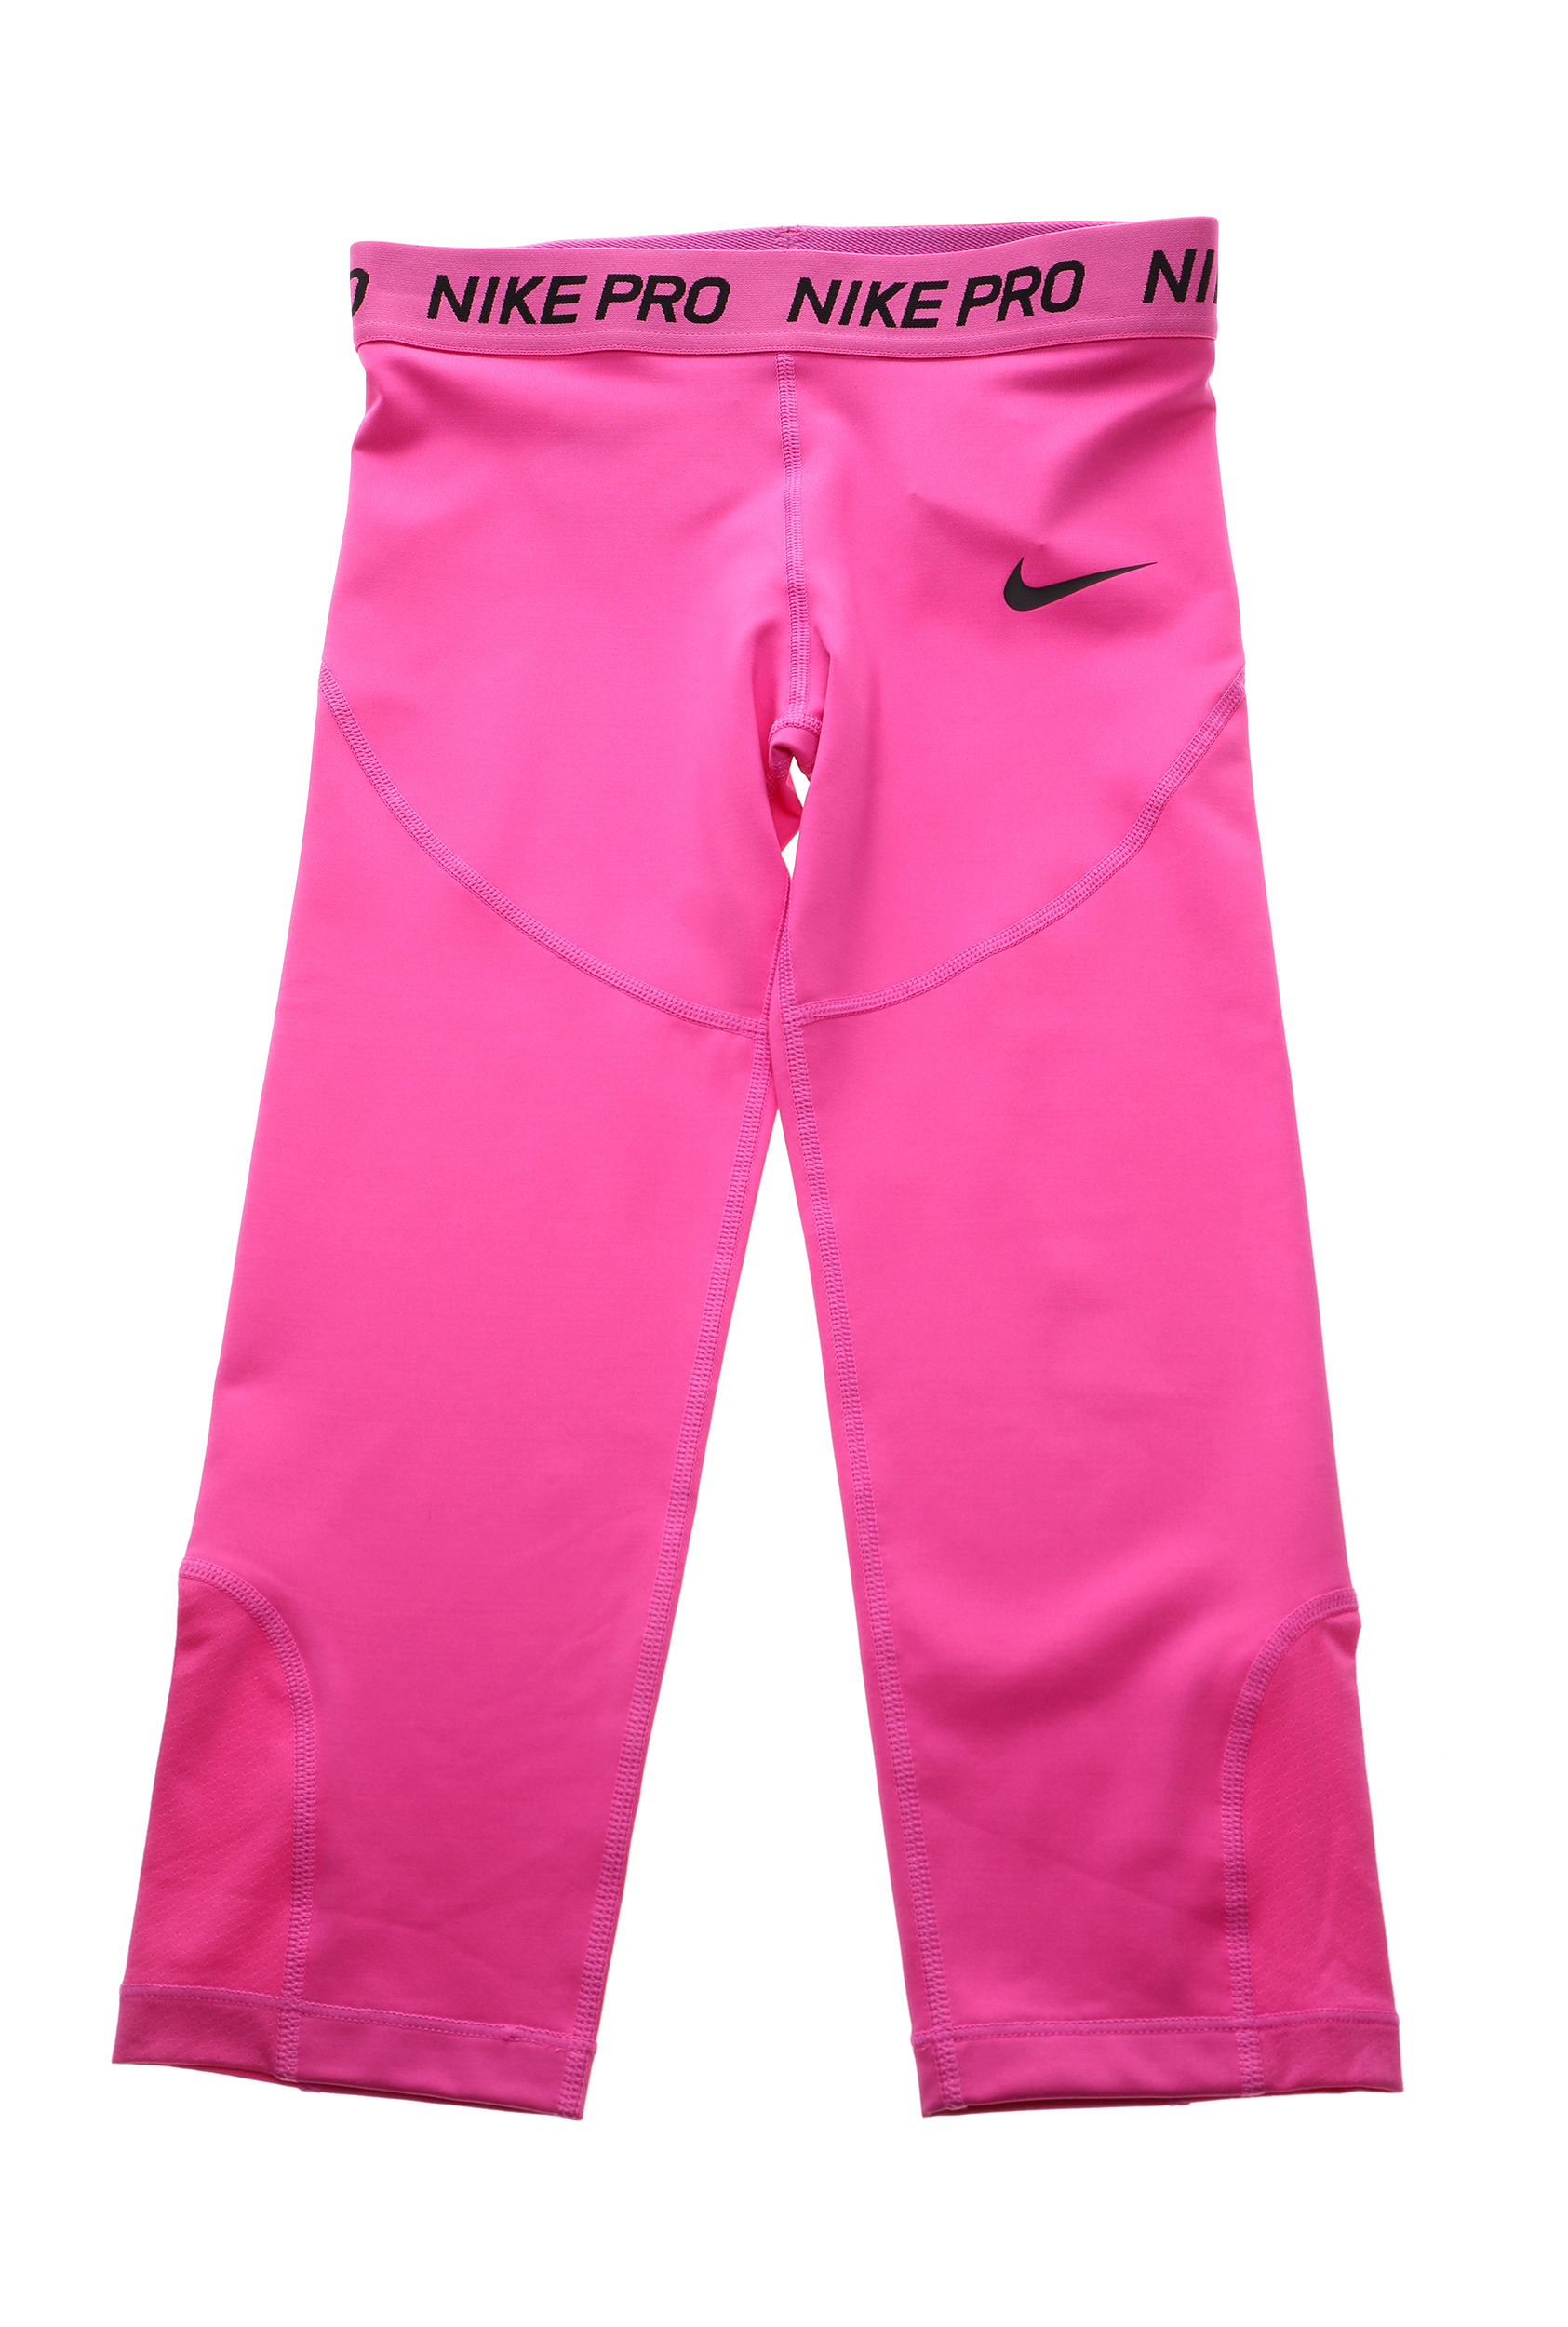 Παιδικά/Girls/Ρούχα/Αθλητικά NIKE - Παιδικό κολάν κάπρι 3/4 NIKE CPRI φούξια